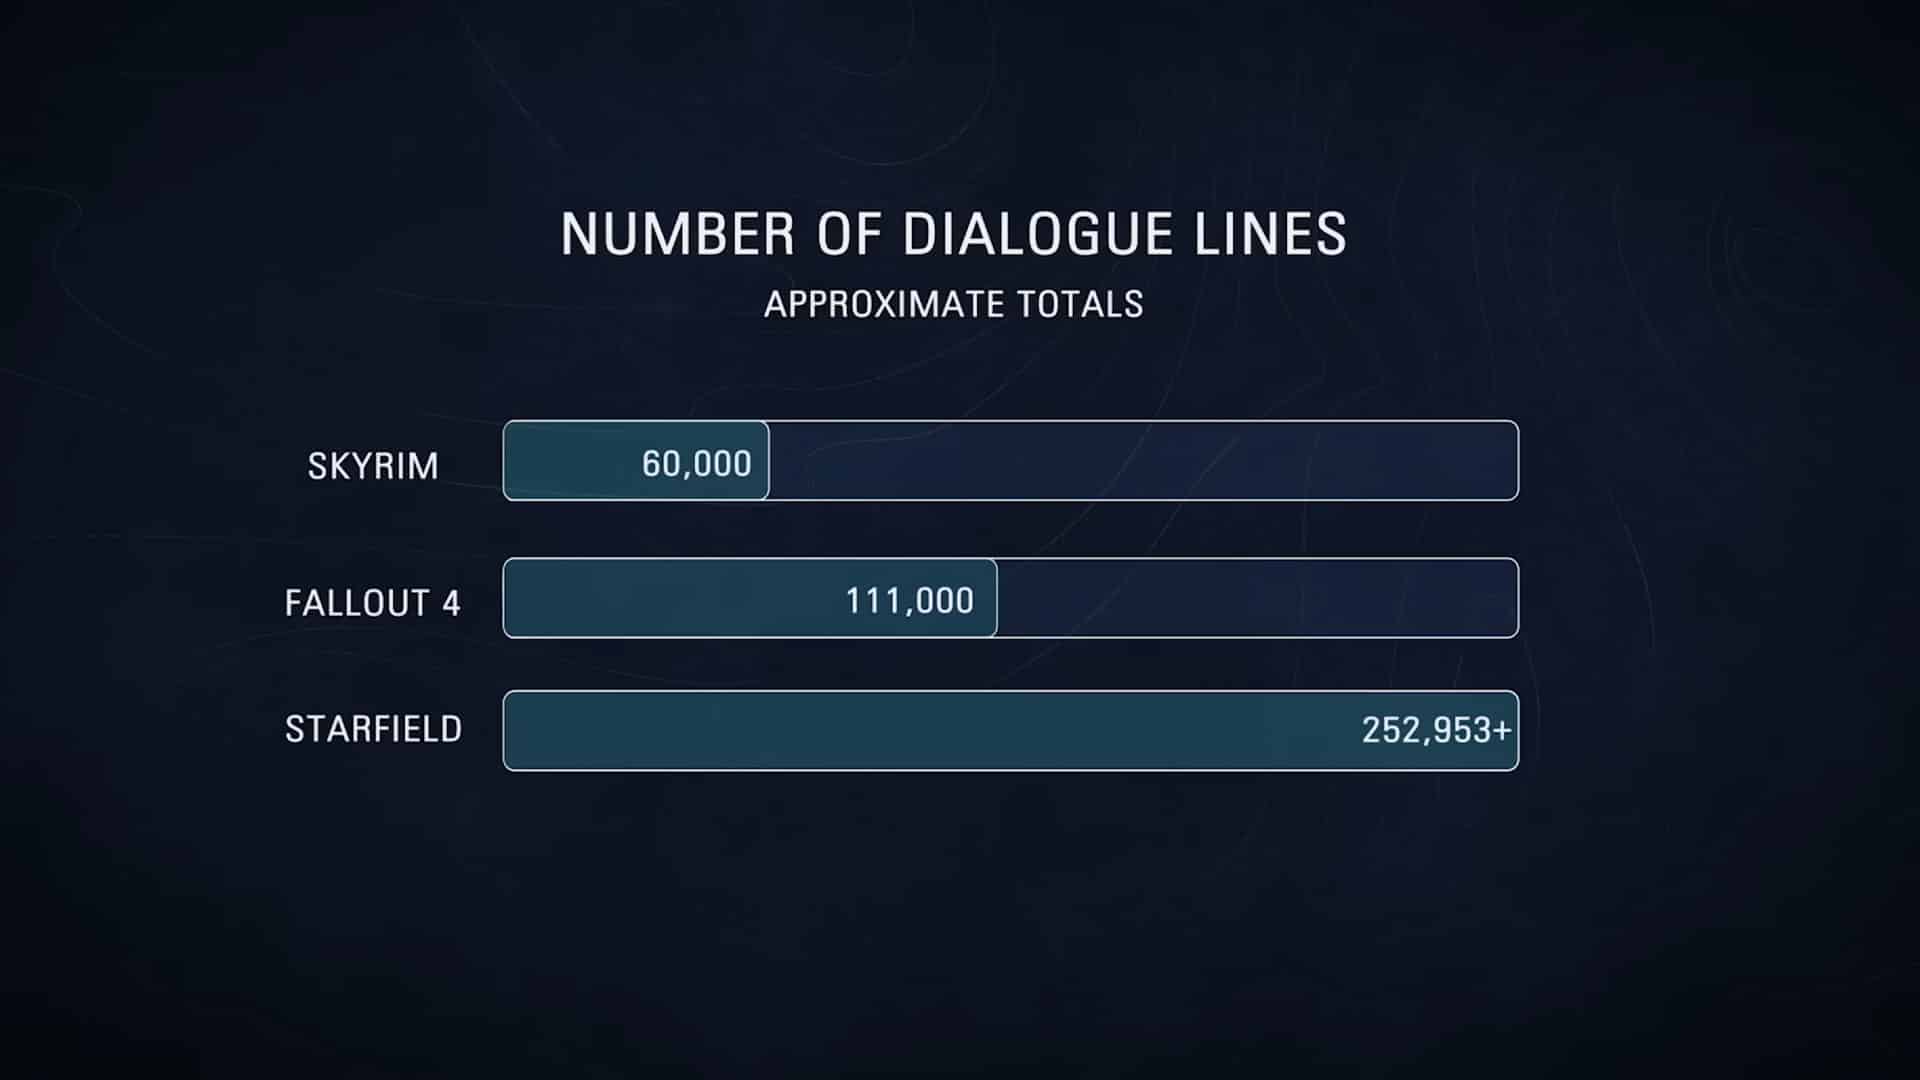 Nombre de lignes de dialogue Starfield, compte plus de 250 000 lignes de dialogue